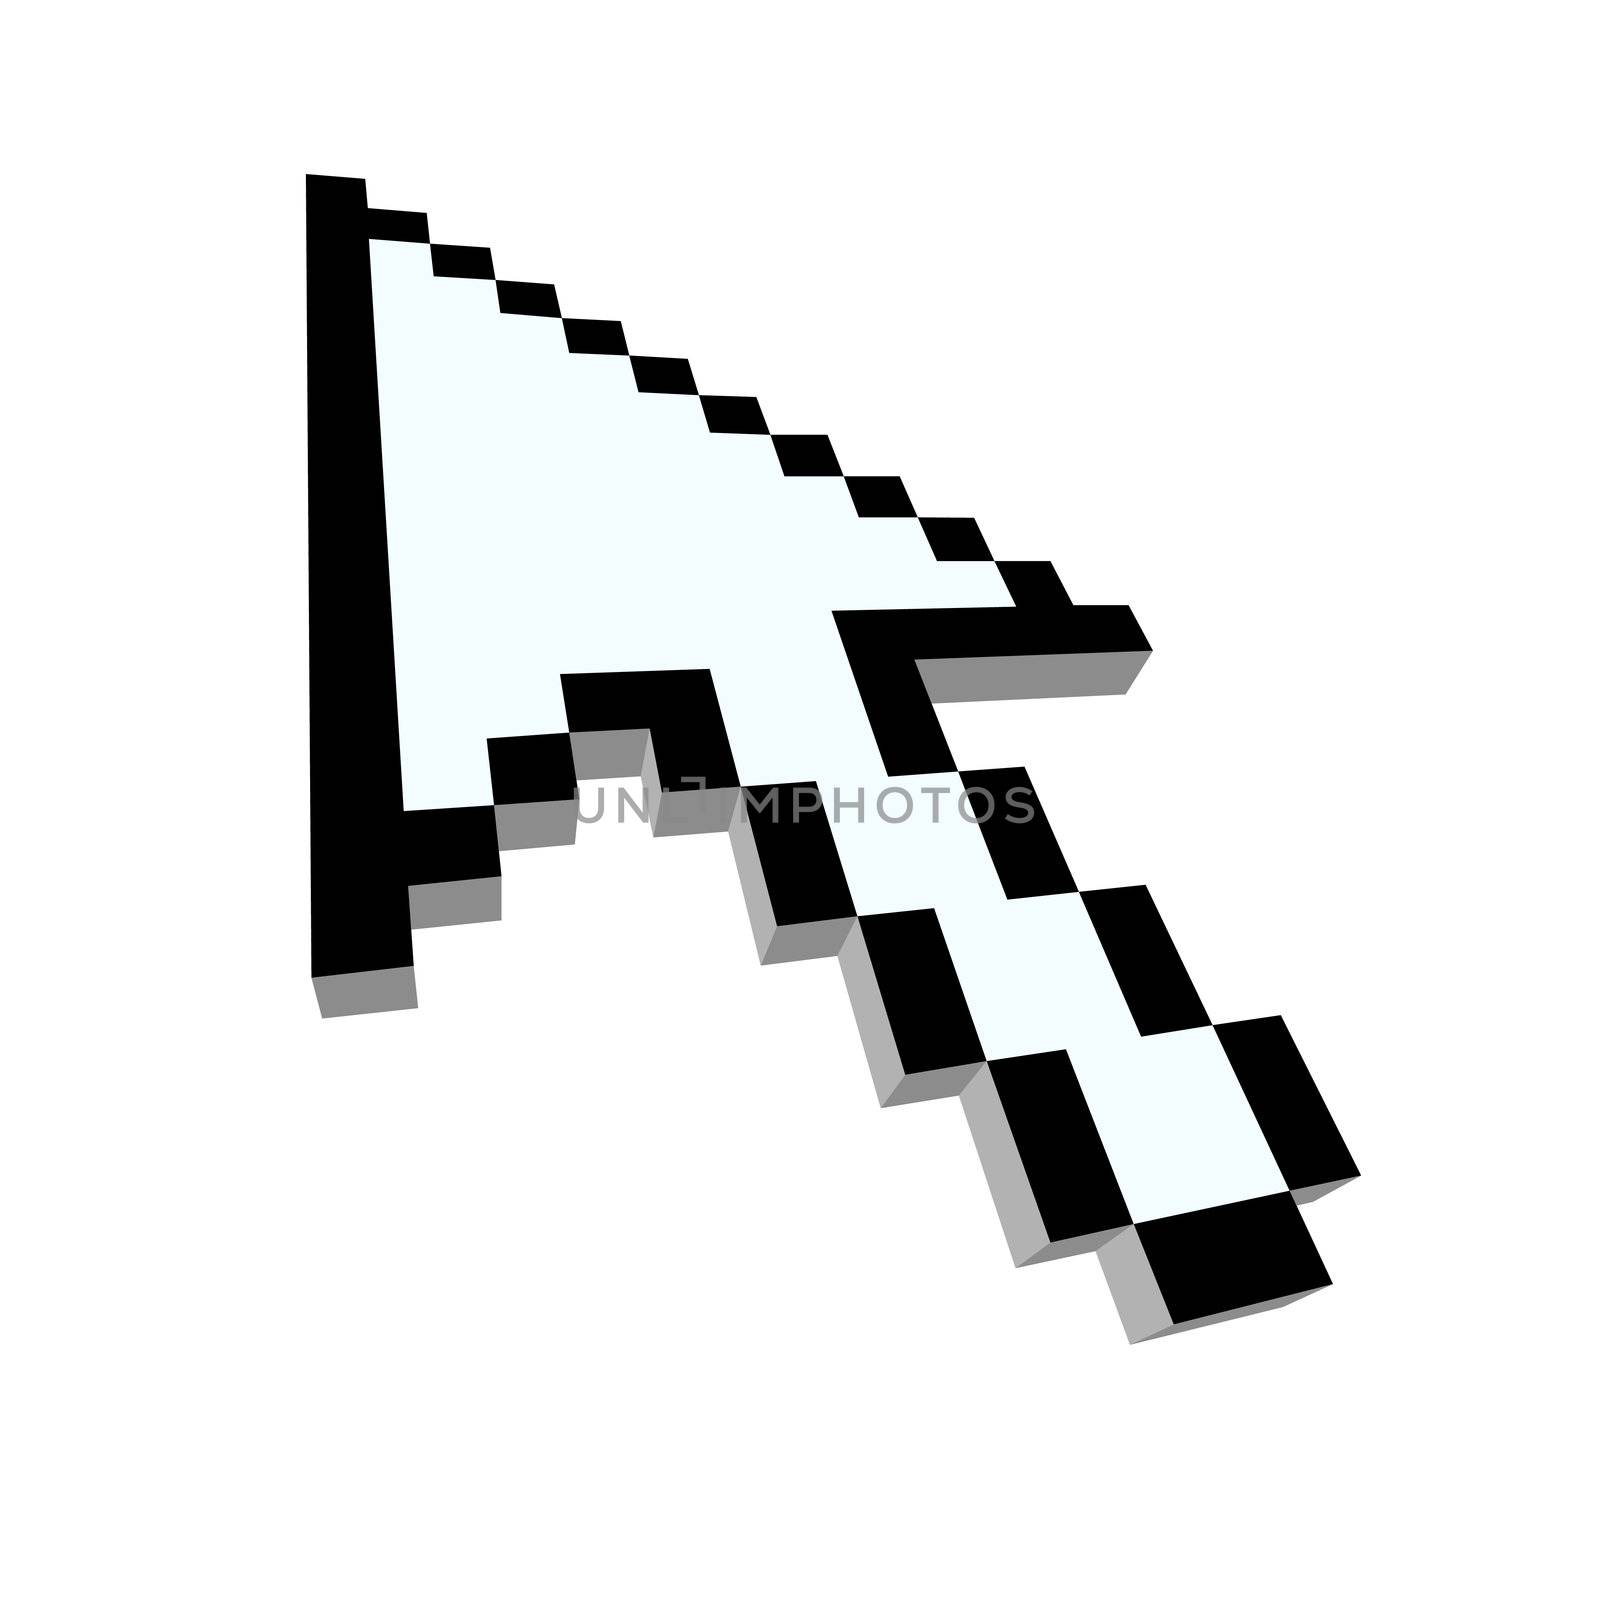 Computer arrow cursor 3d illustration